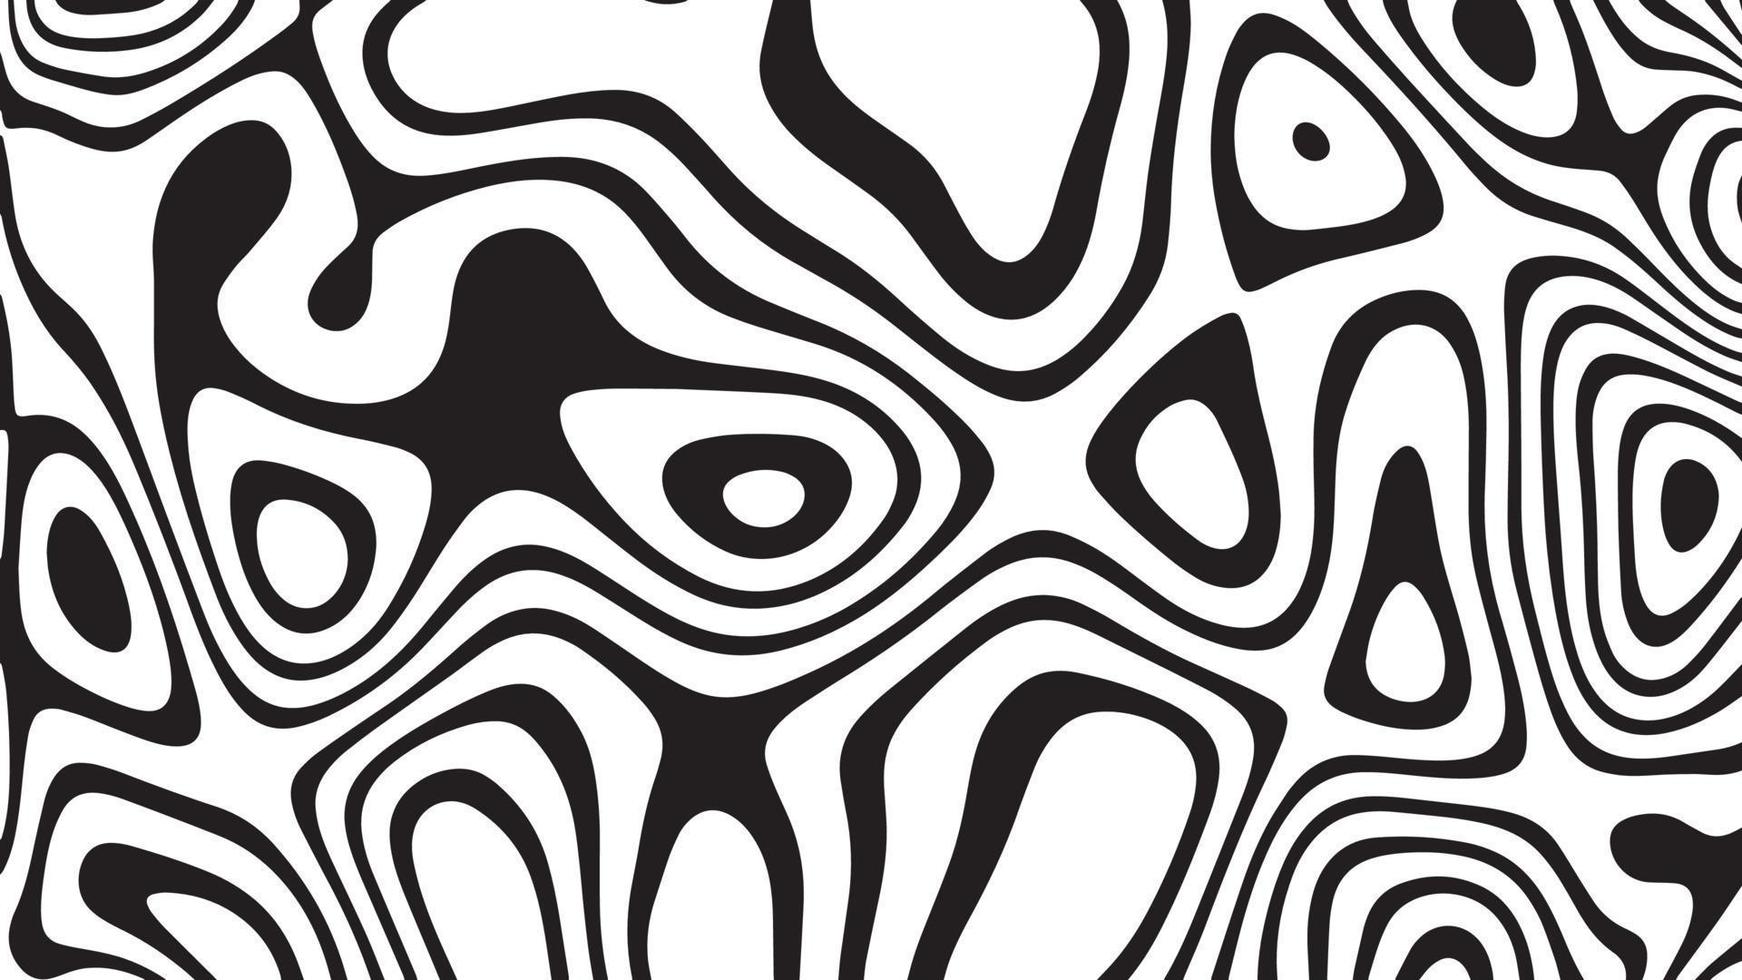 textura de fondo abstracto de patrón de línea en blanco y negro vector